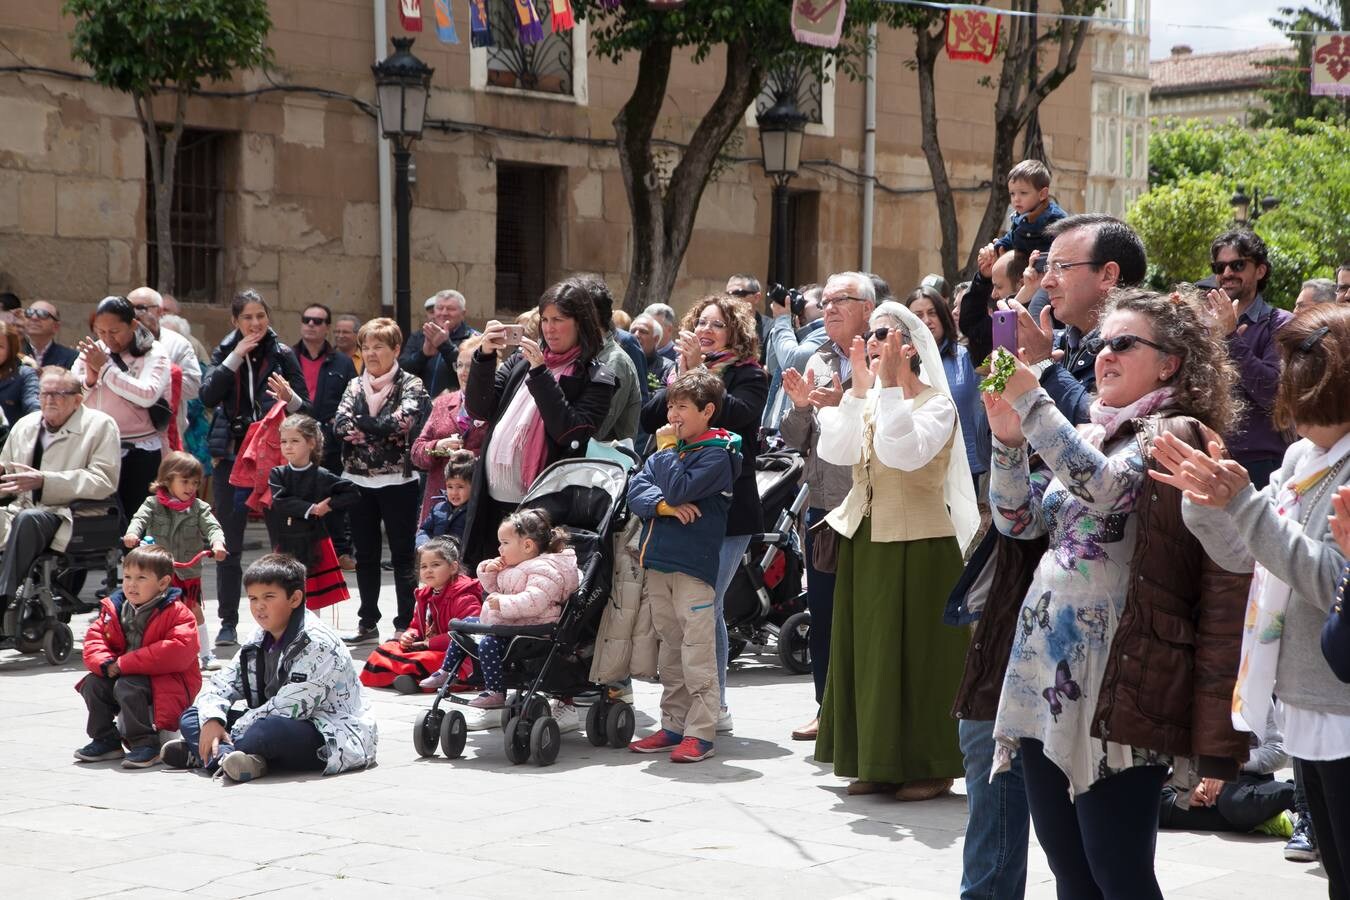 Fotos: Exaltación del folclore en la plaza de San Bartolomé